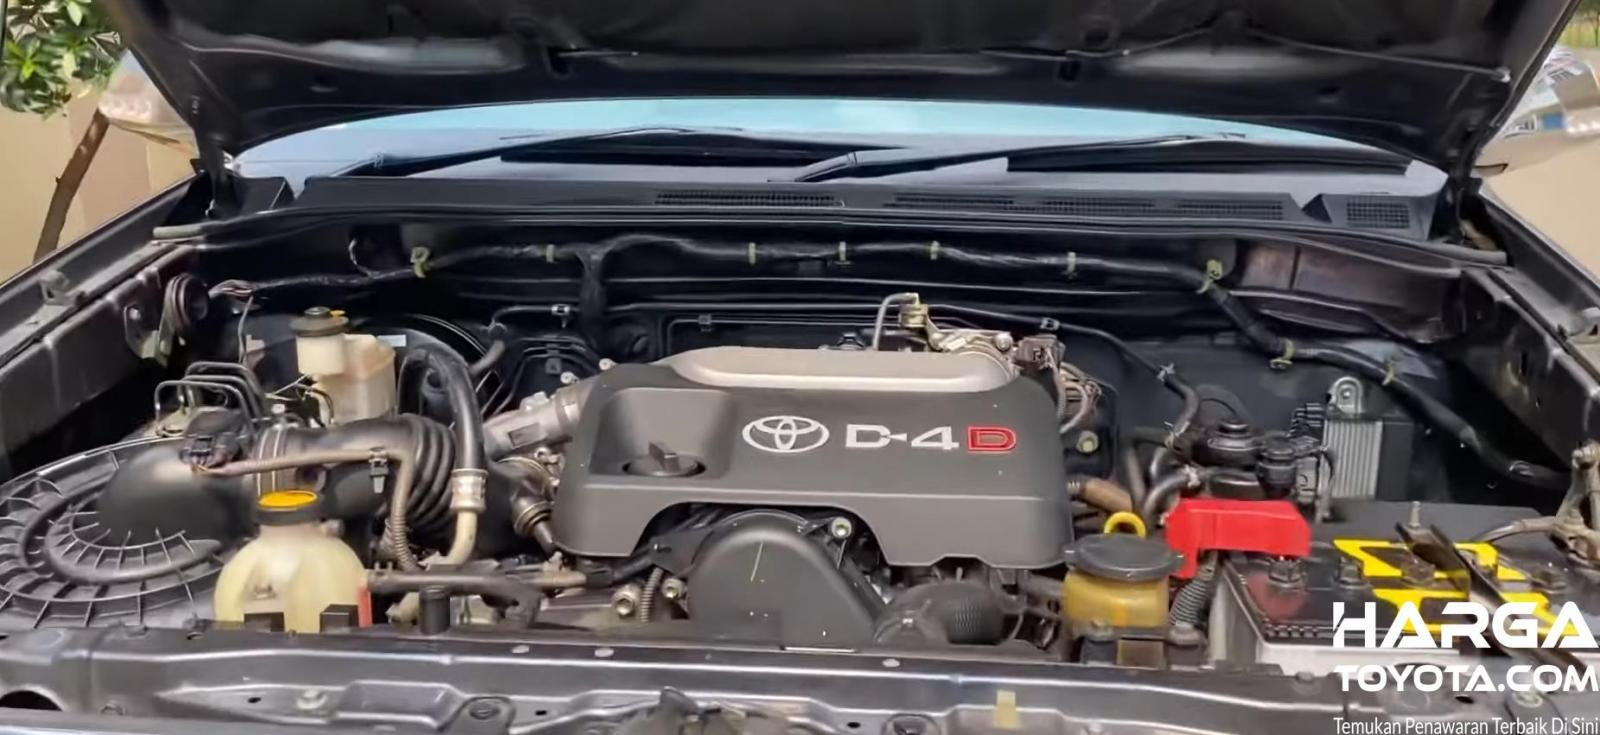 Gambar ini menunjukkan mesin pada mobil Toyota Fortuner